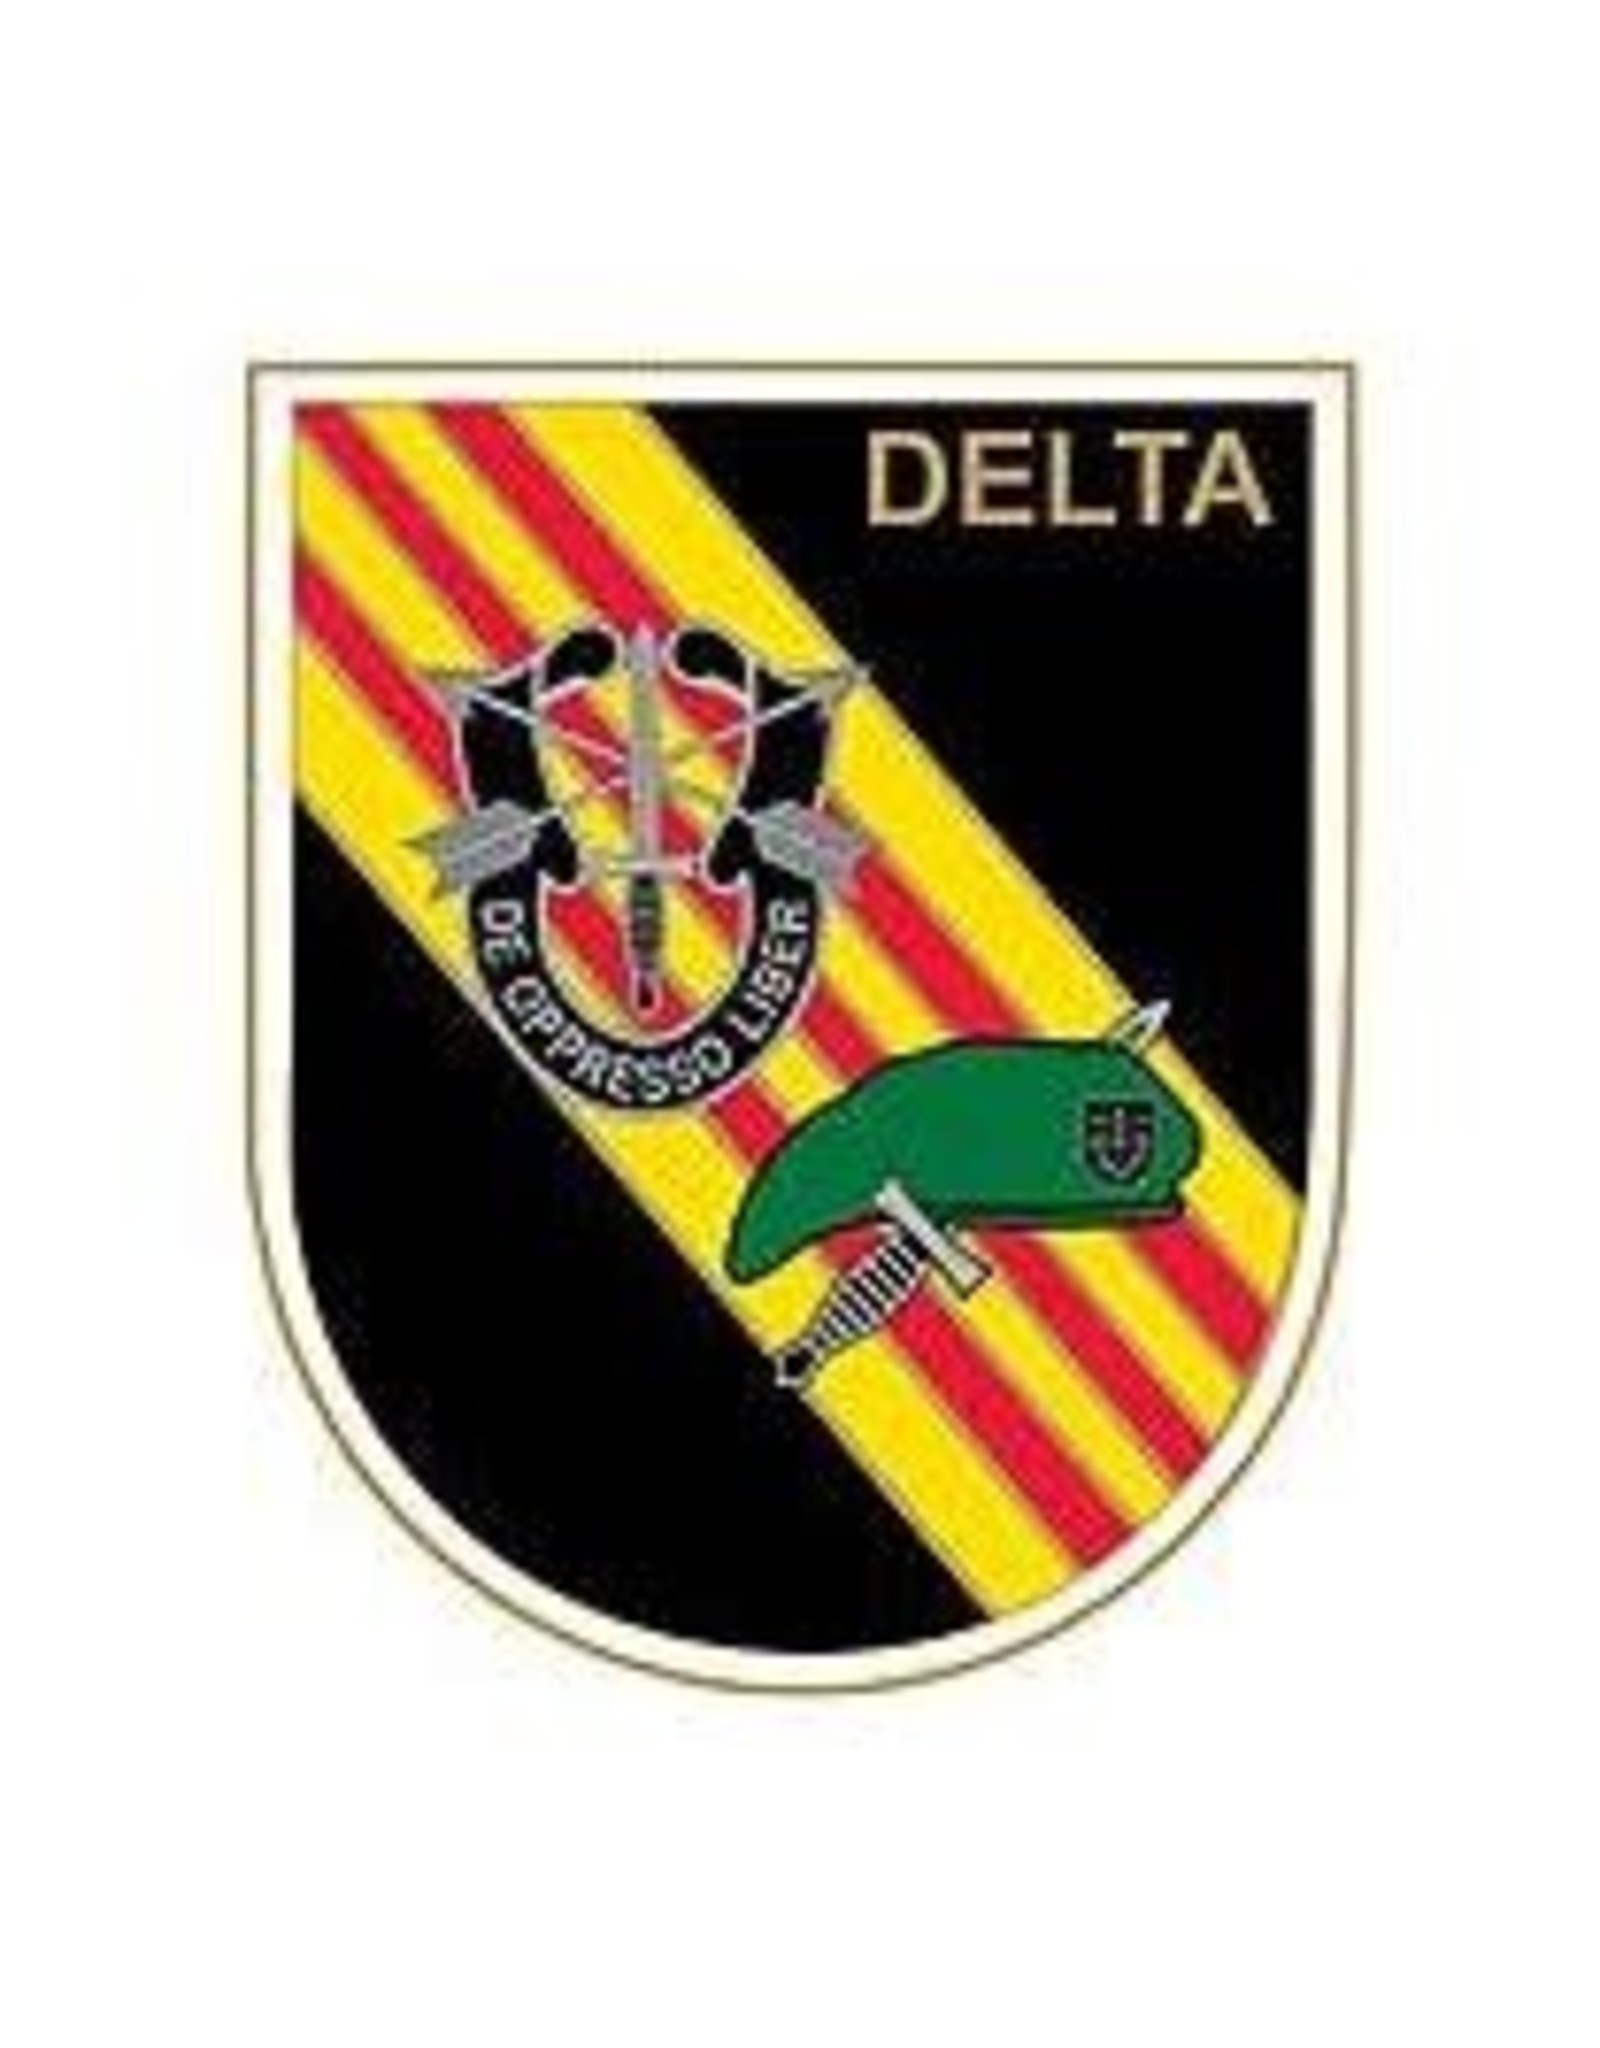 Pin - Spec Delta Force